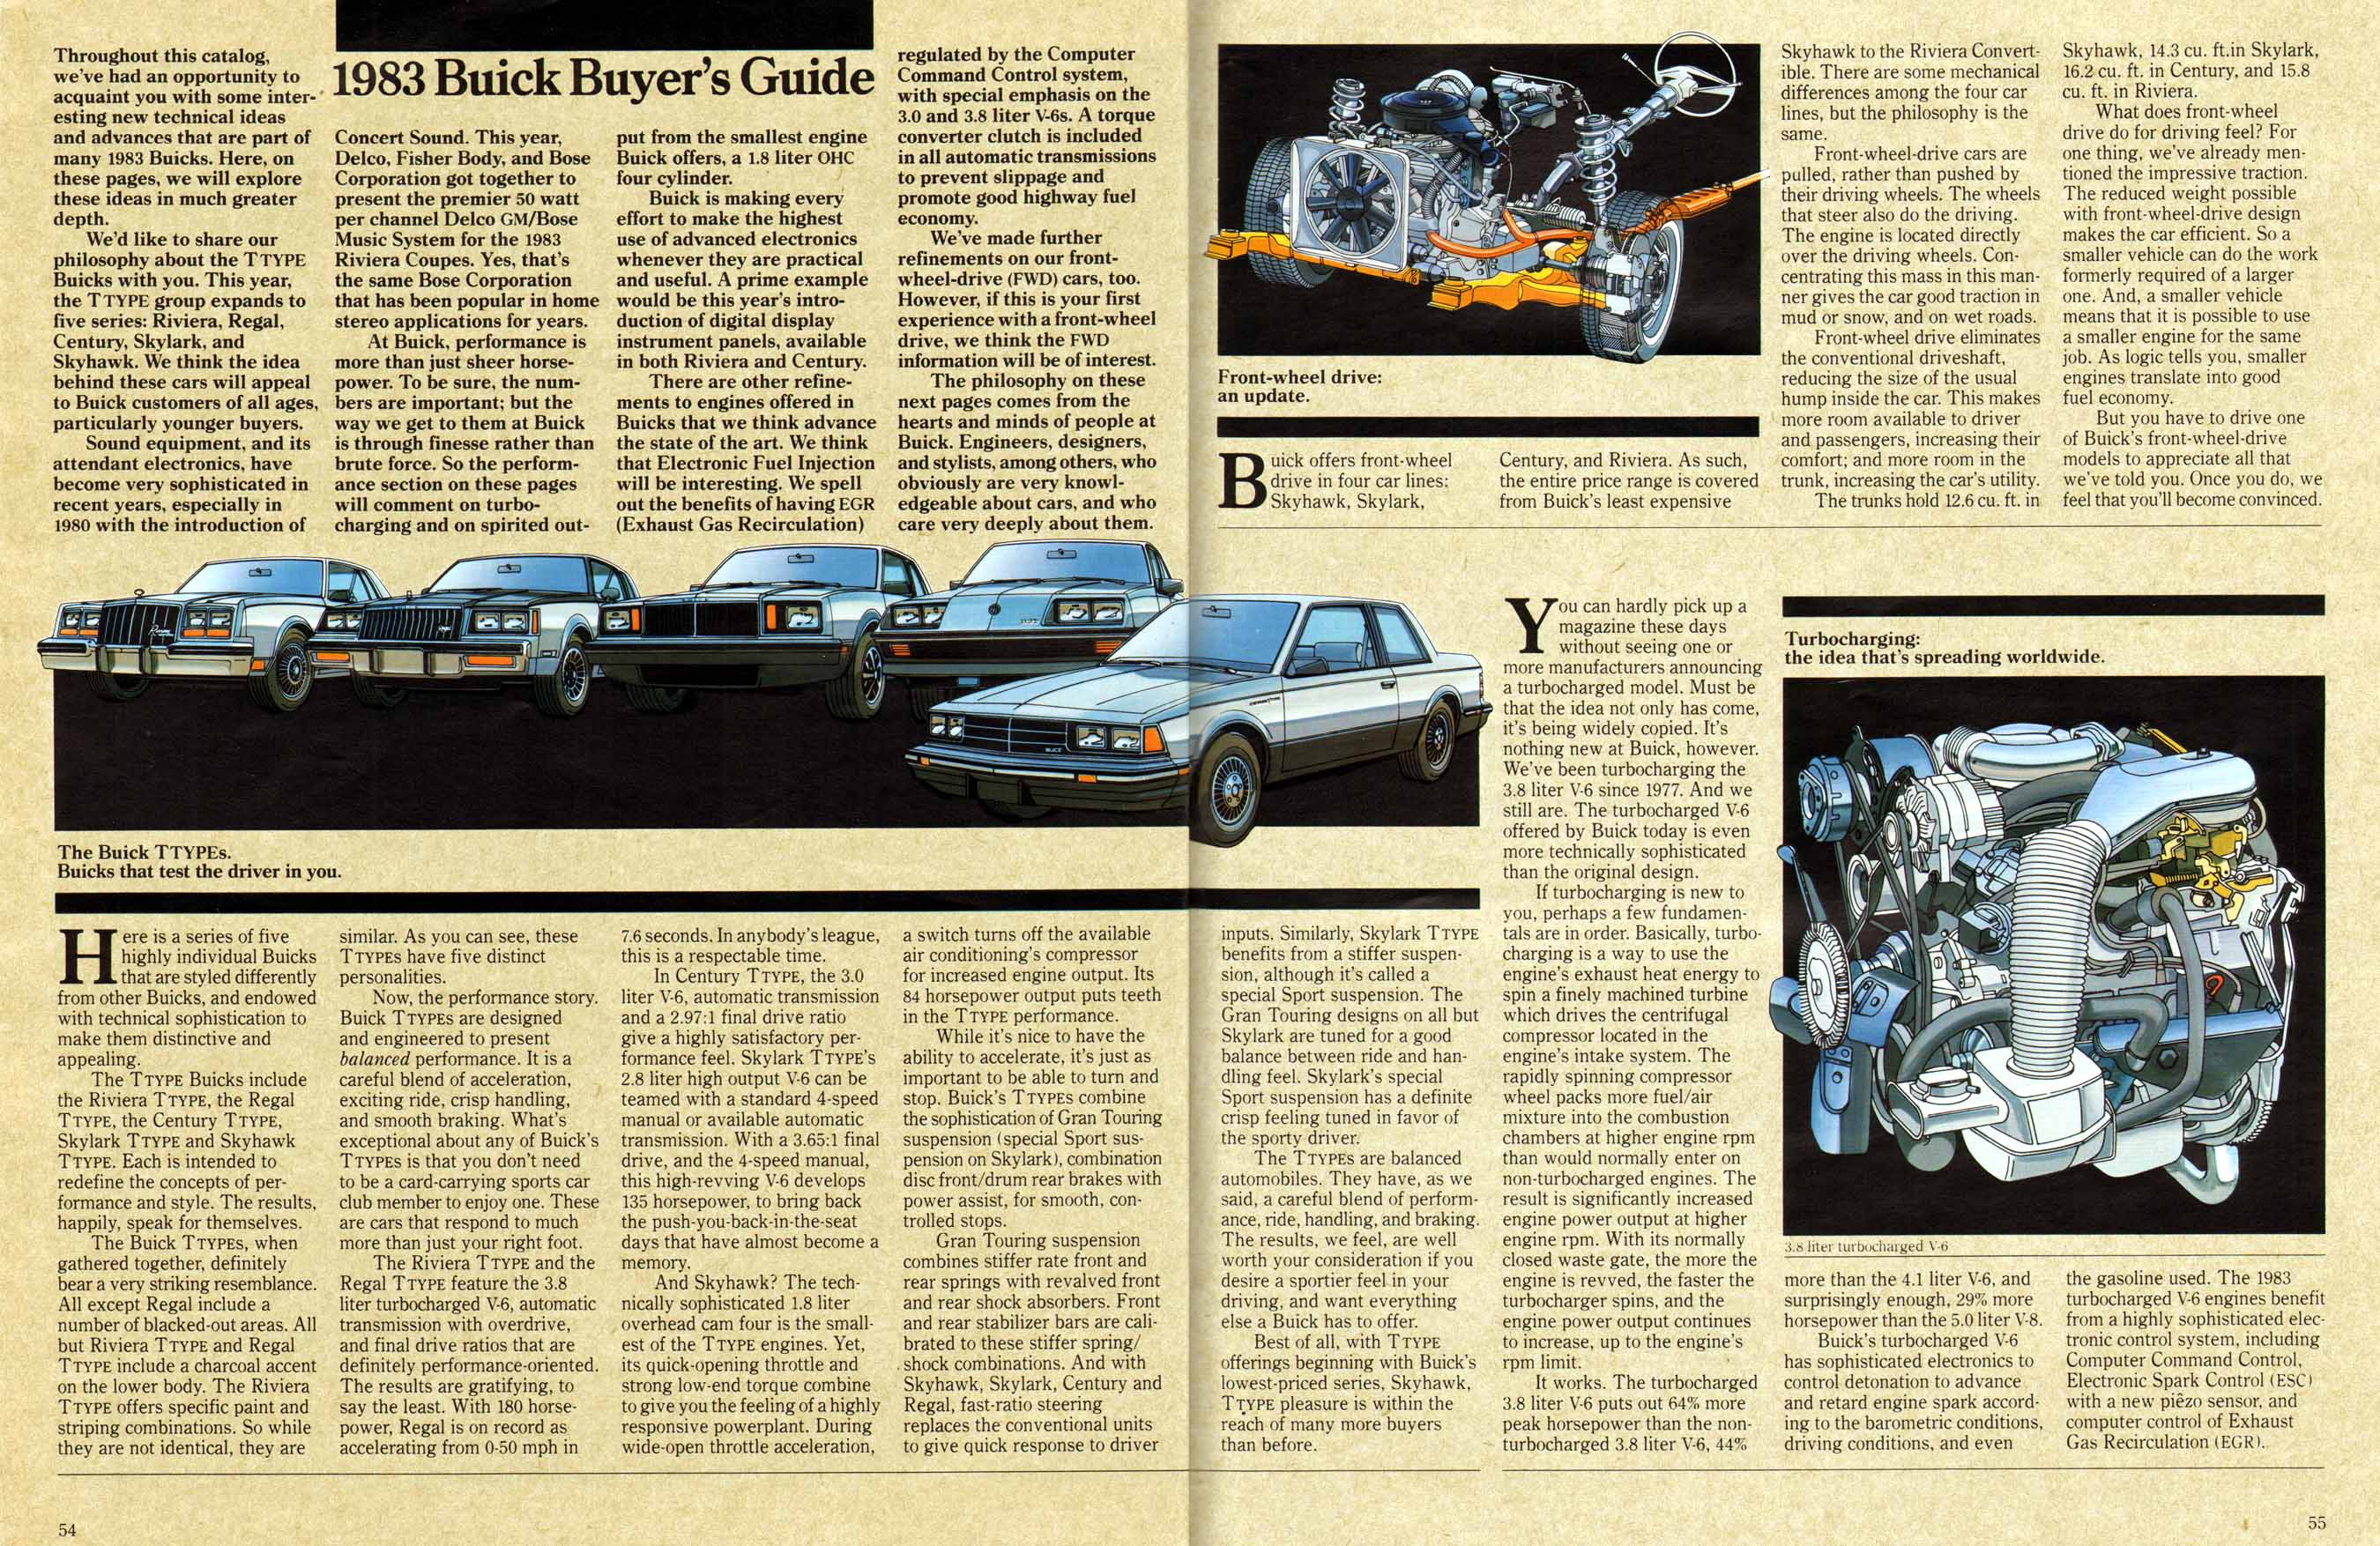 1983 Buick Full Line Prestige-54-55